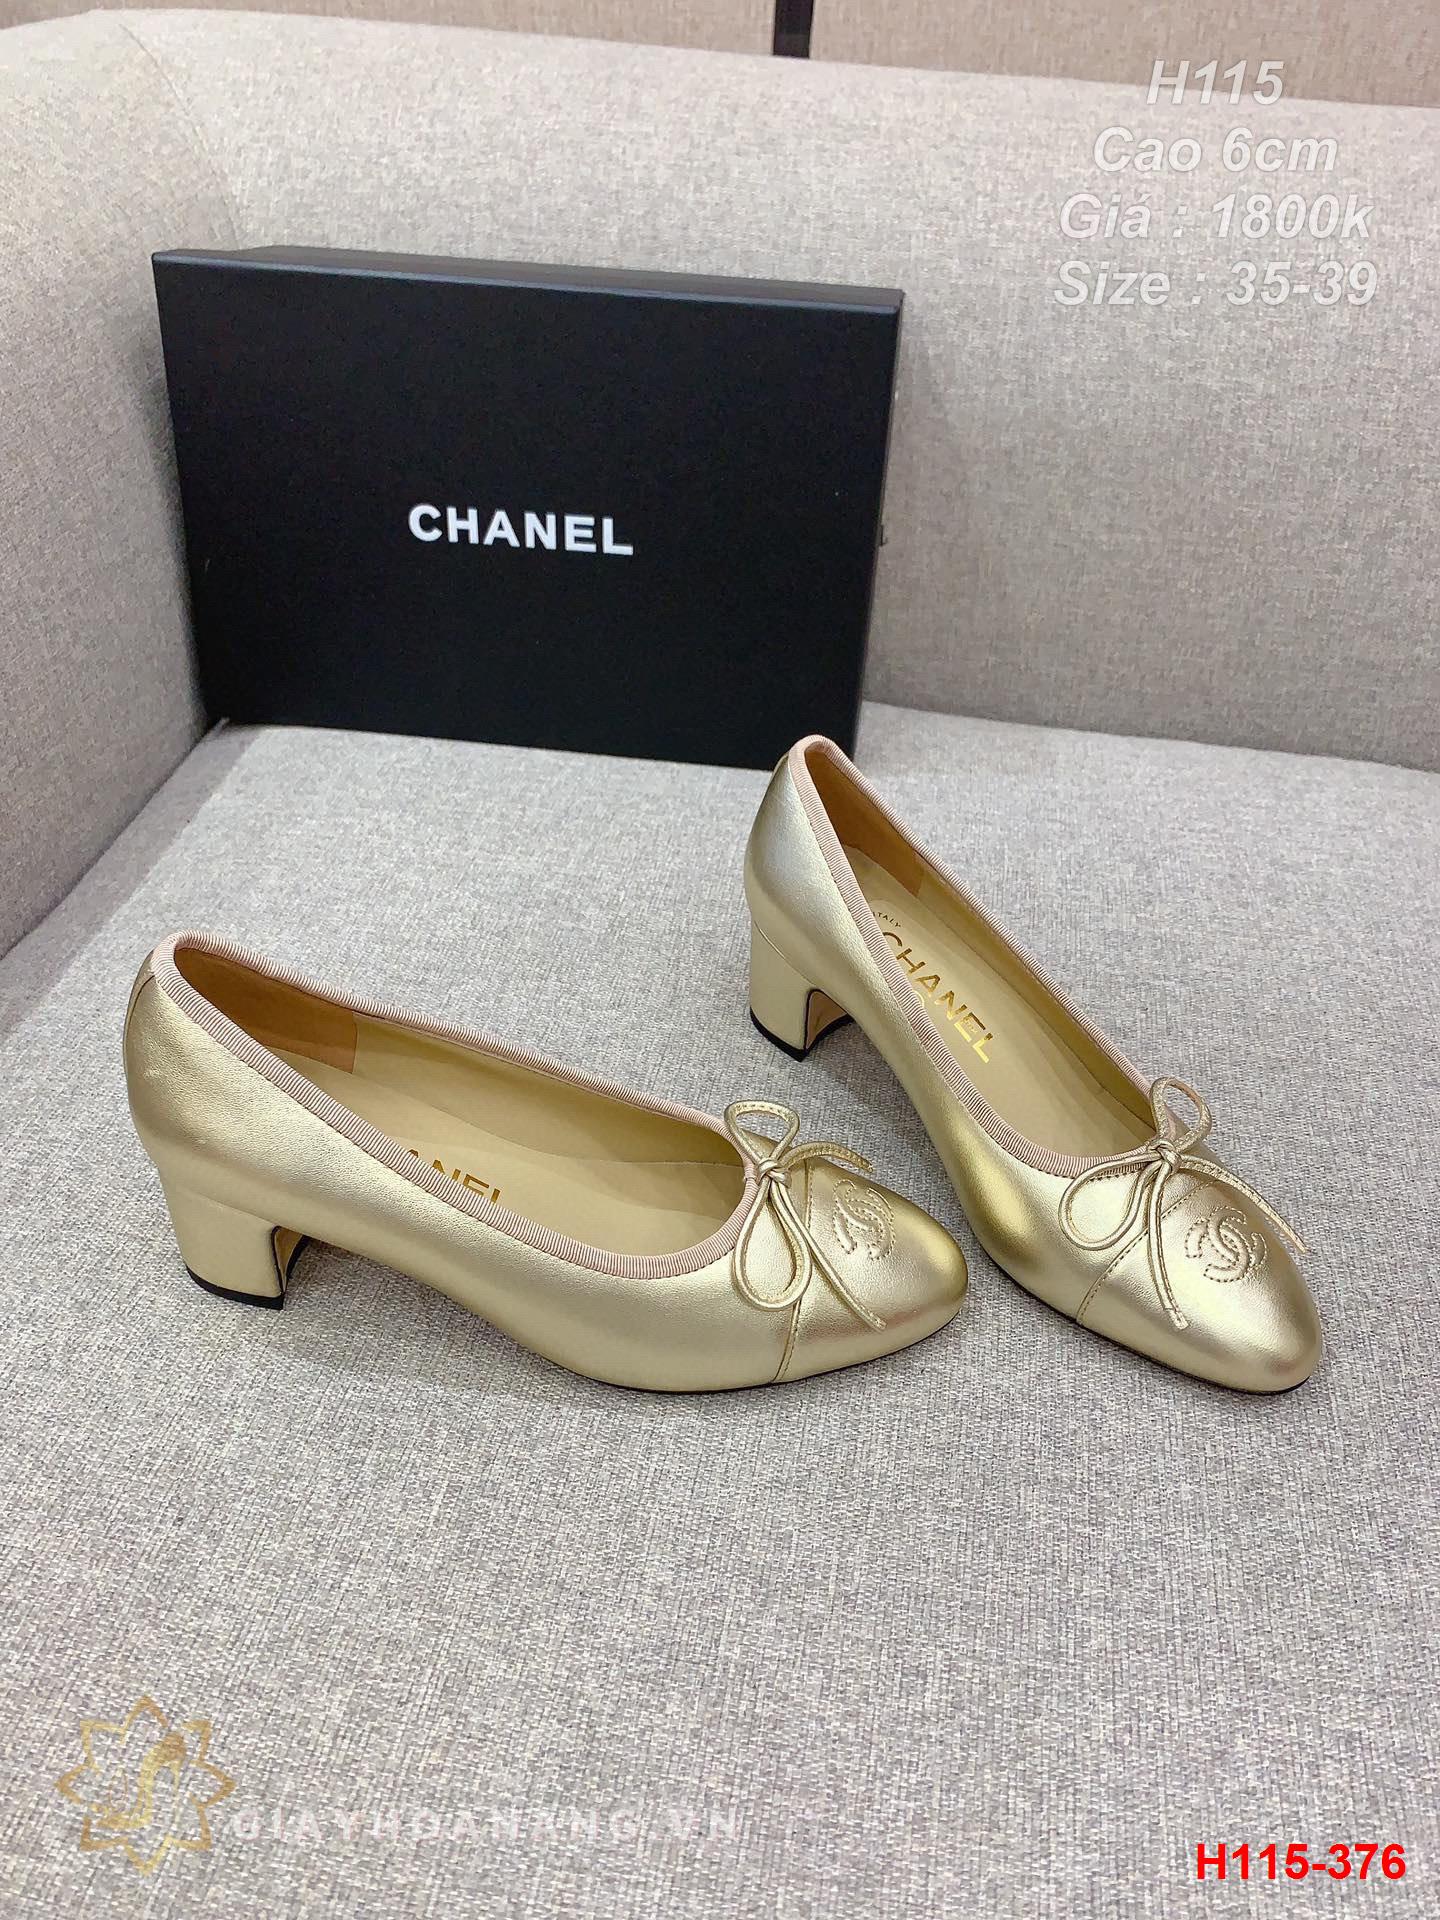 H115-376 Chanel giày cao 6cm siêu cấp